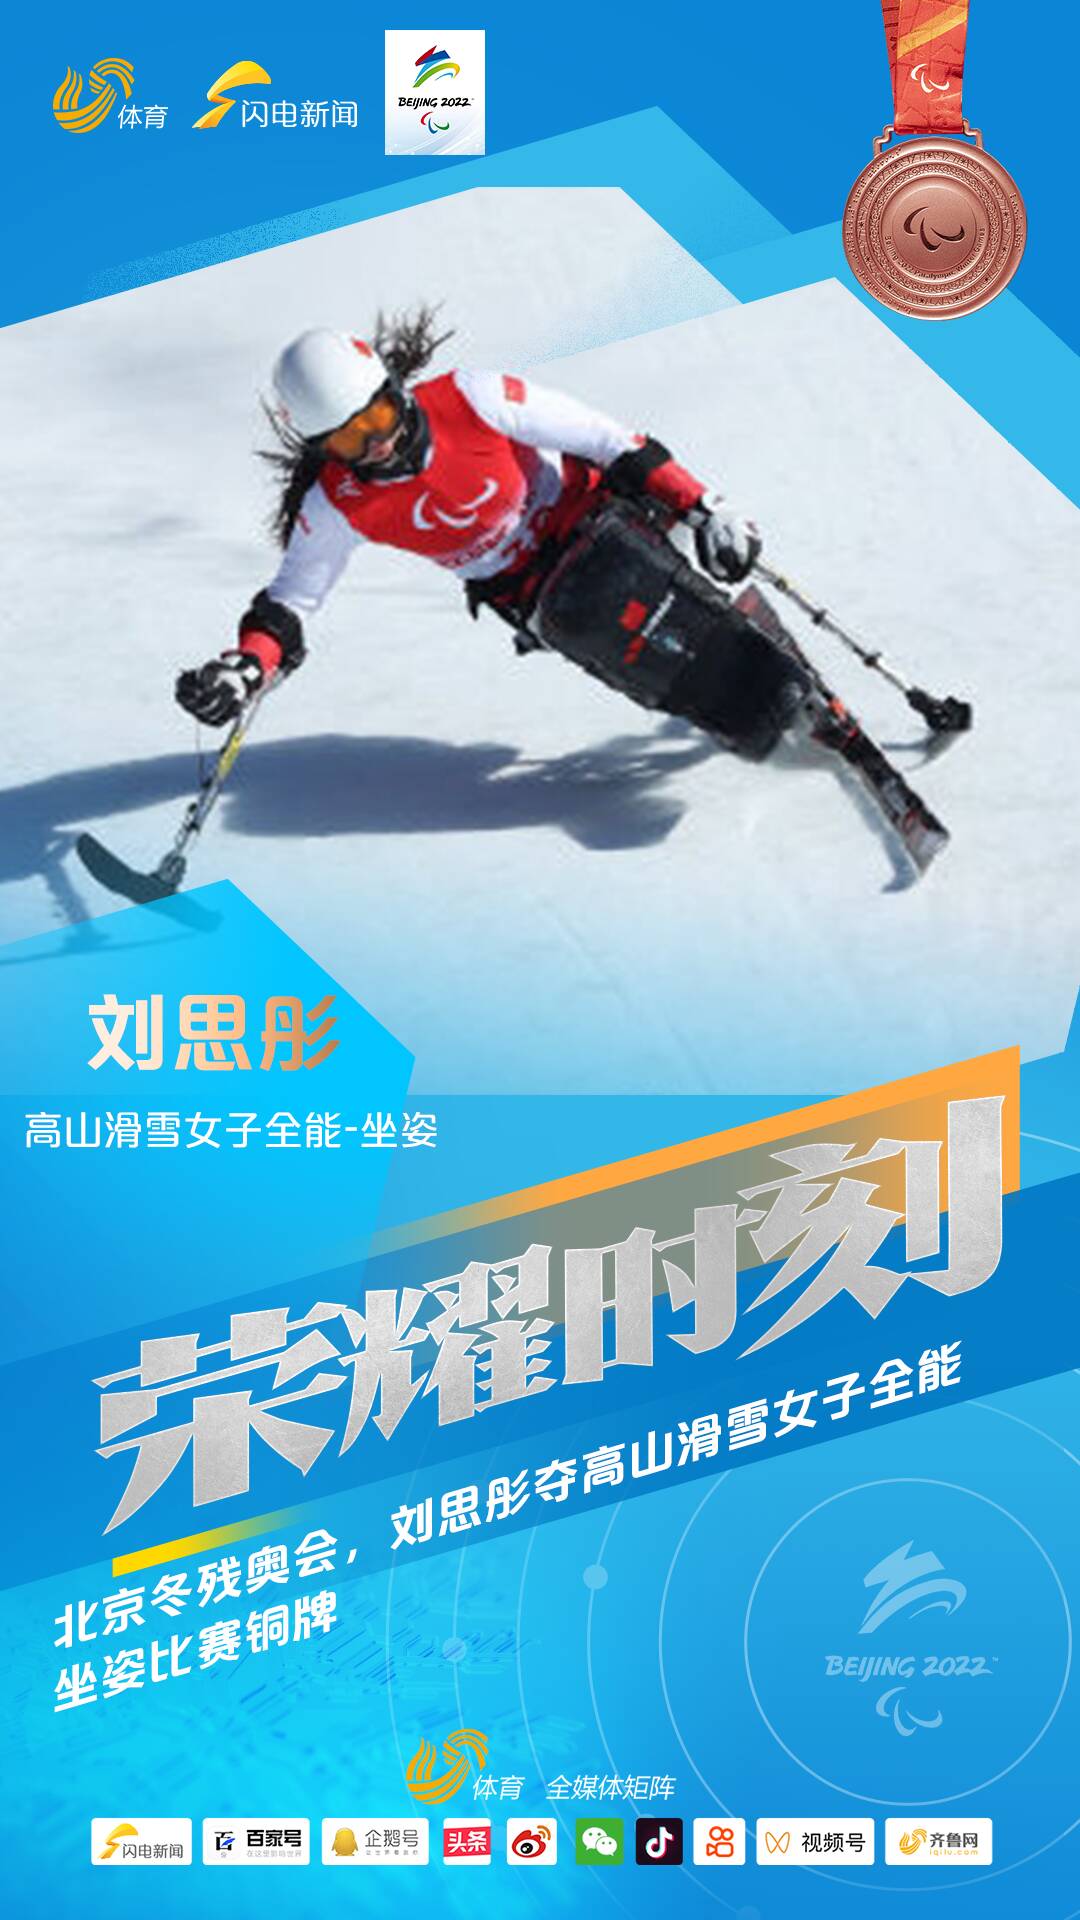 刘思彤夺高山滑雪女子全能坐姿比赛铜牌